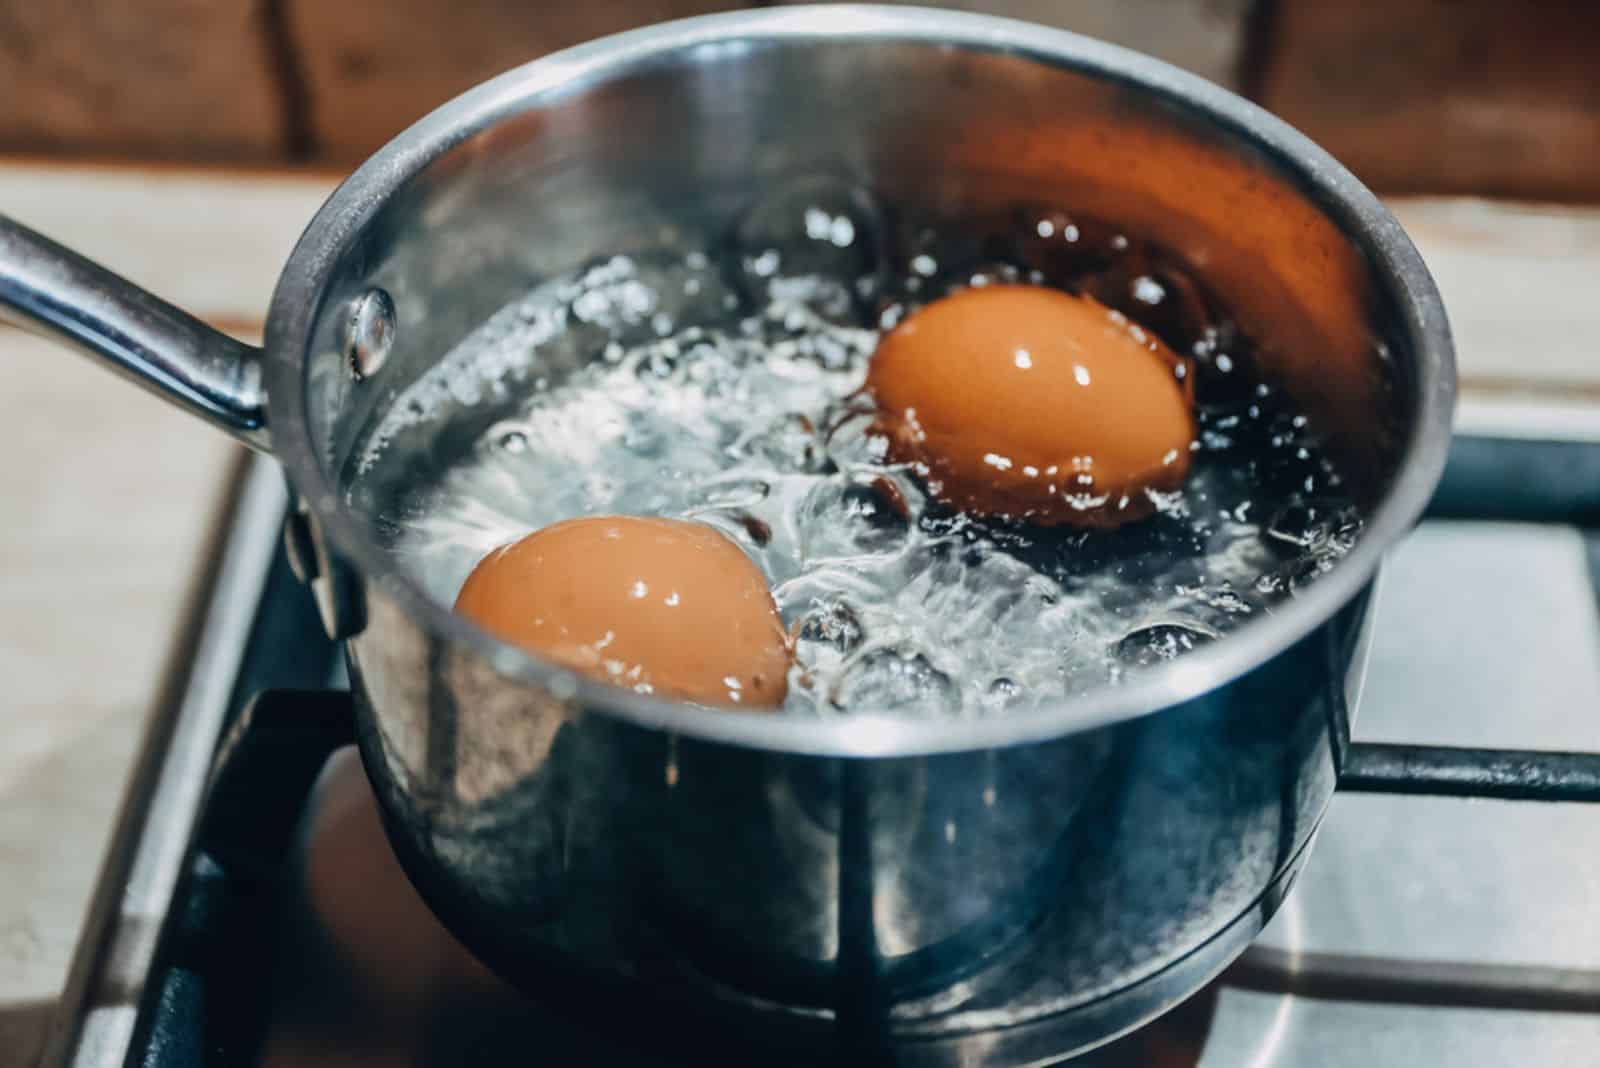 Kochtopf mit kochenden Eiern auf einem Gasherd